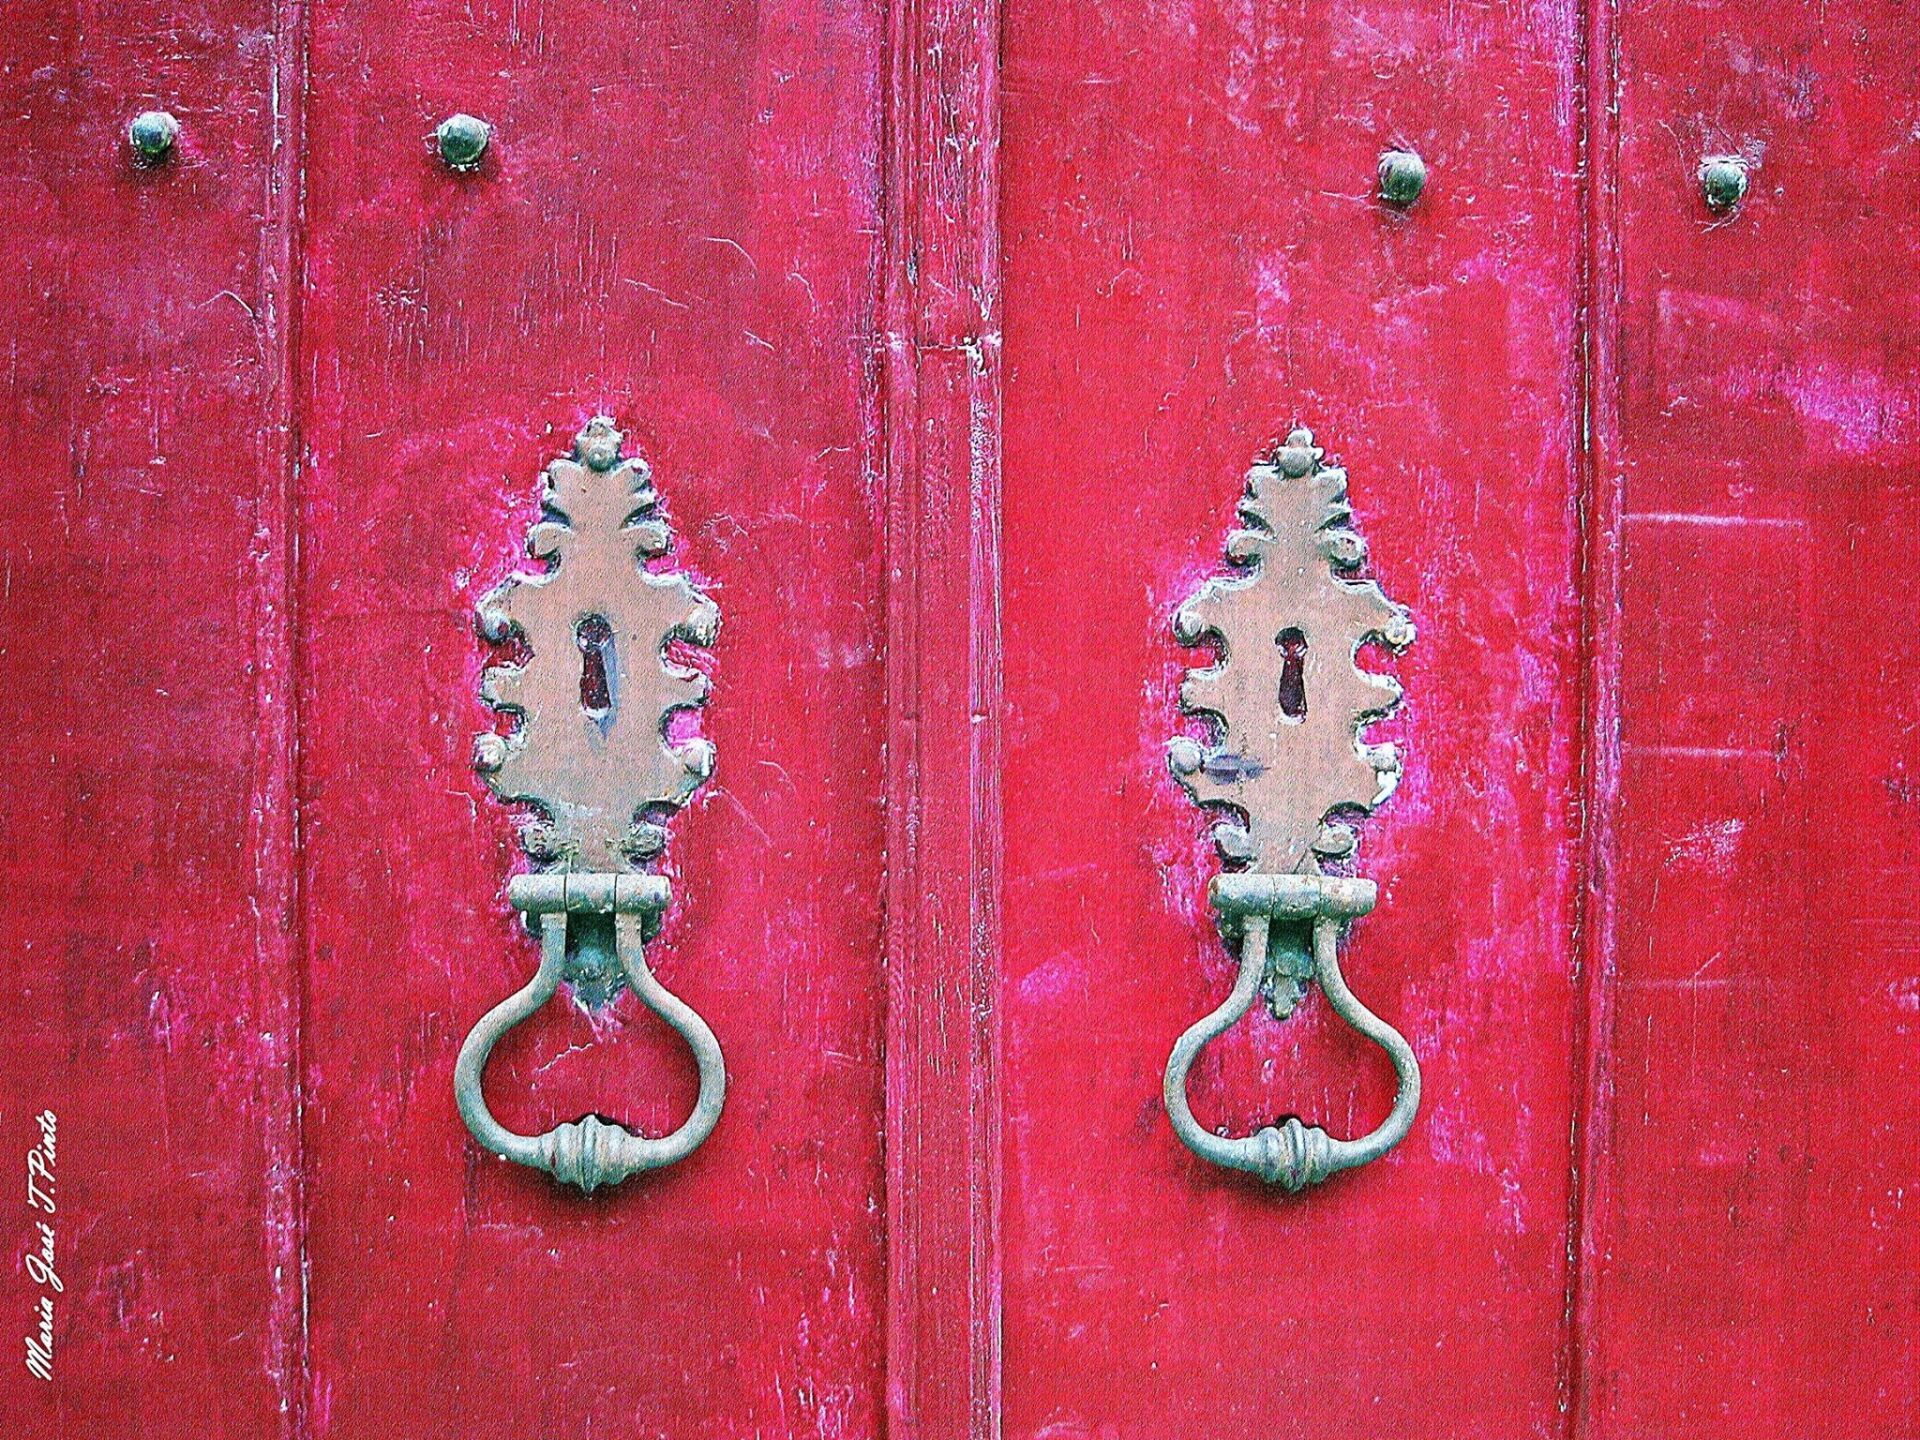 Portuguese doors cover